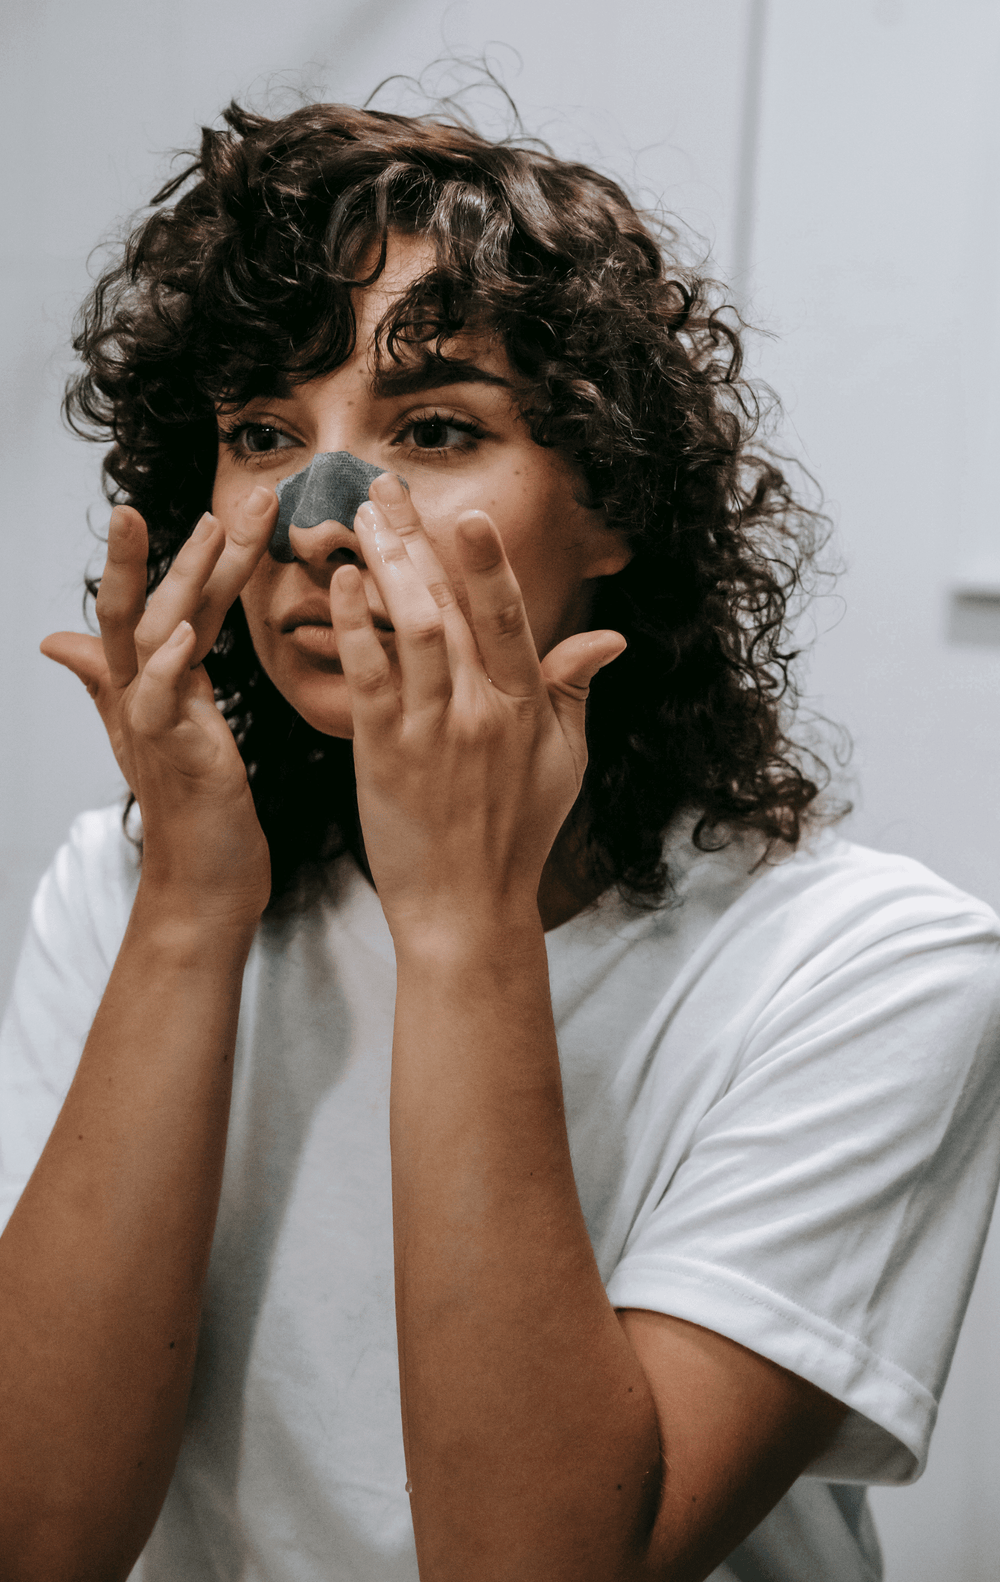 Microkystes sur le visage : s'en débarrasser durablement - Nuoo